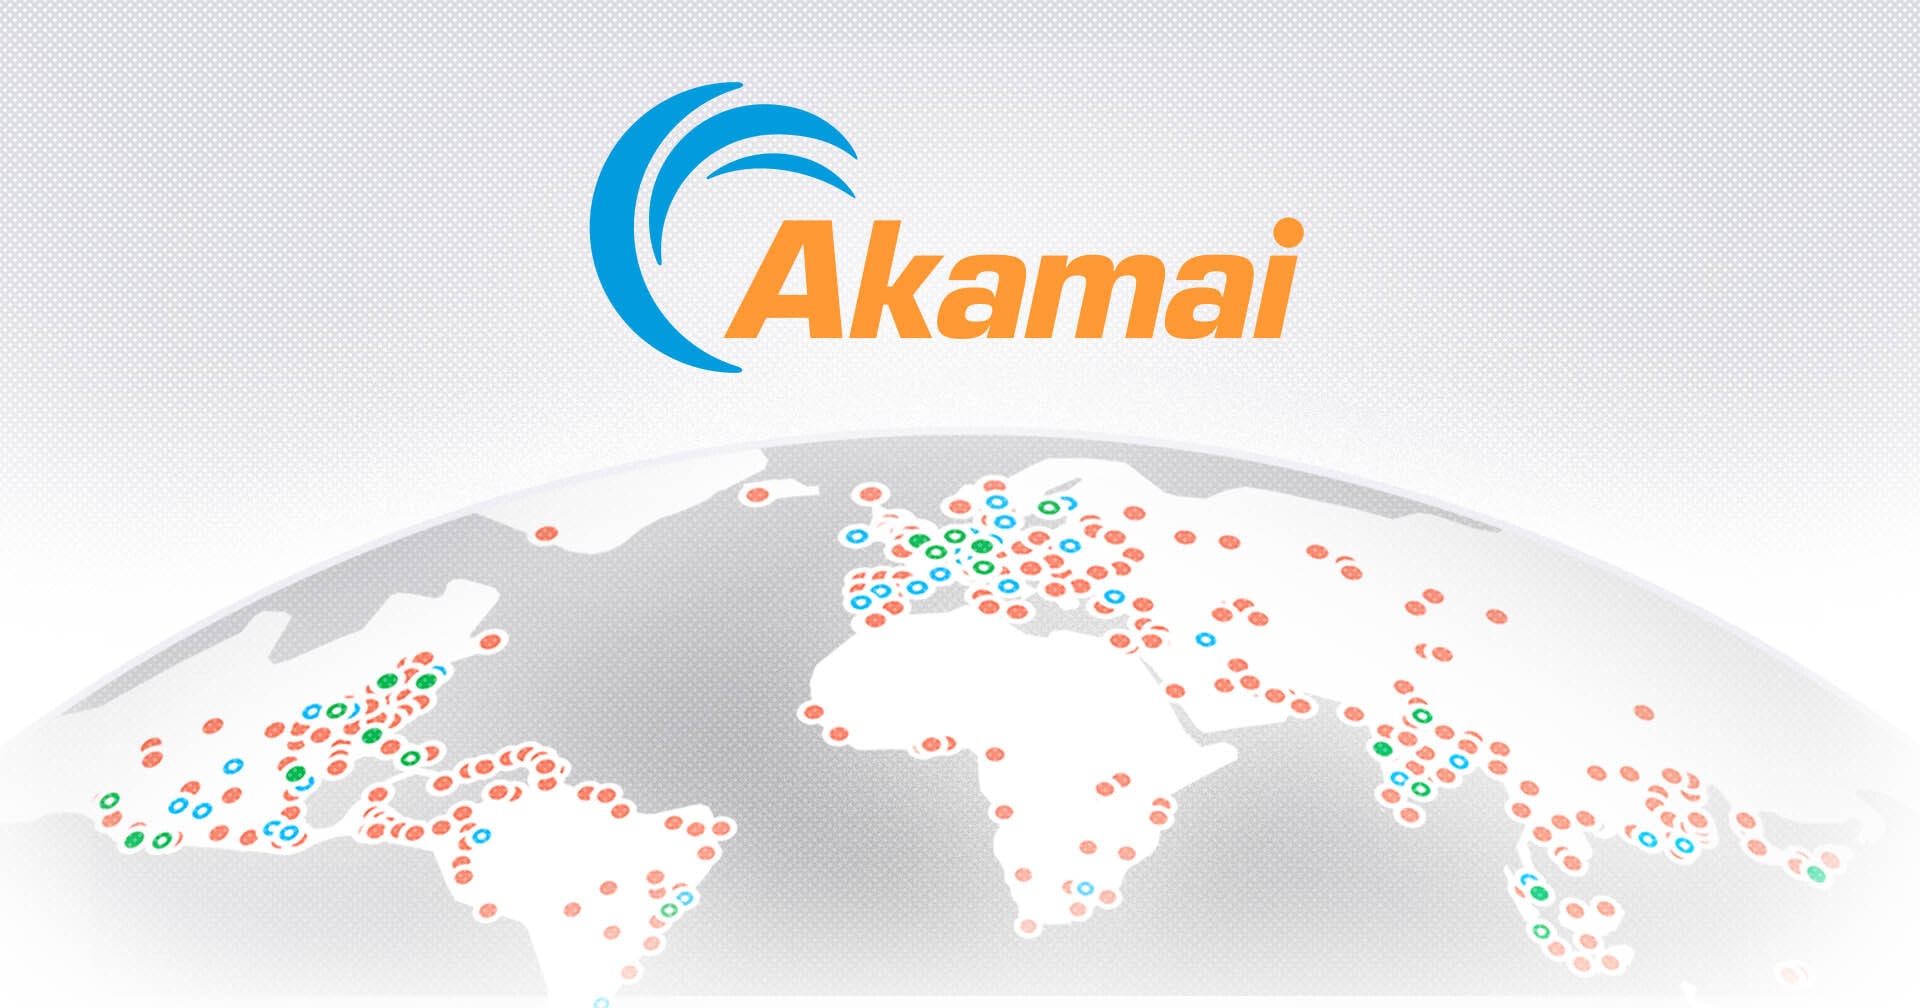 Actualización de Precios de los Servicios de Cloud Computing de Akamai Cabecera del Blog